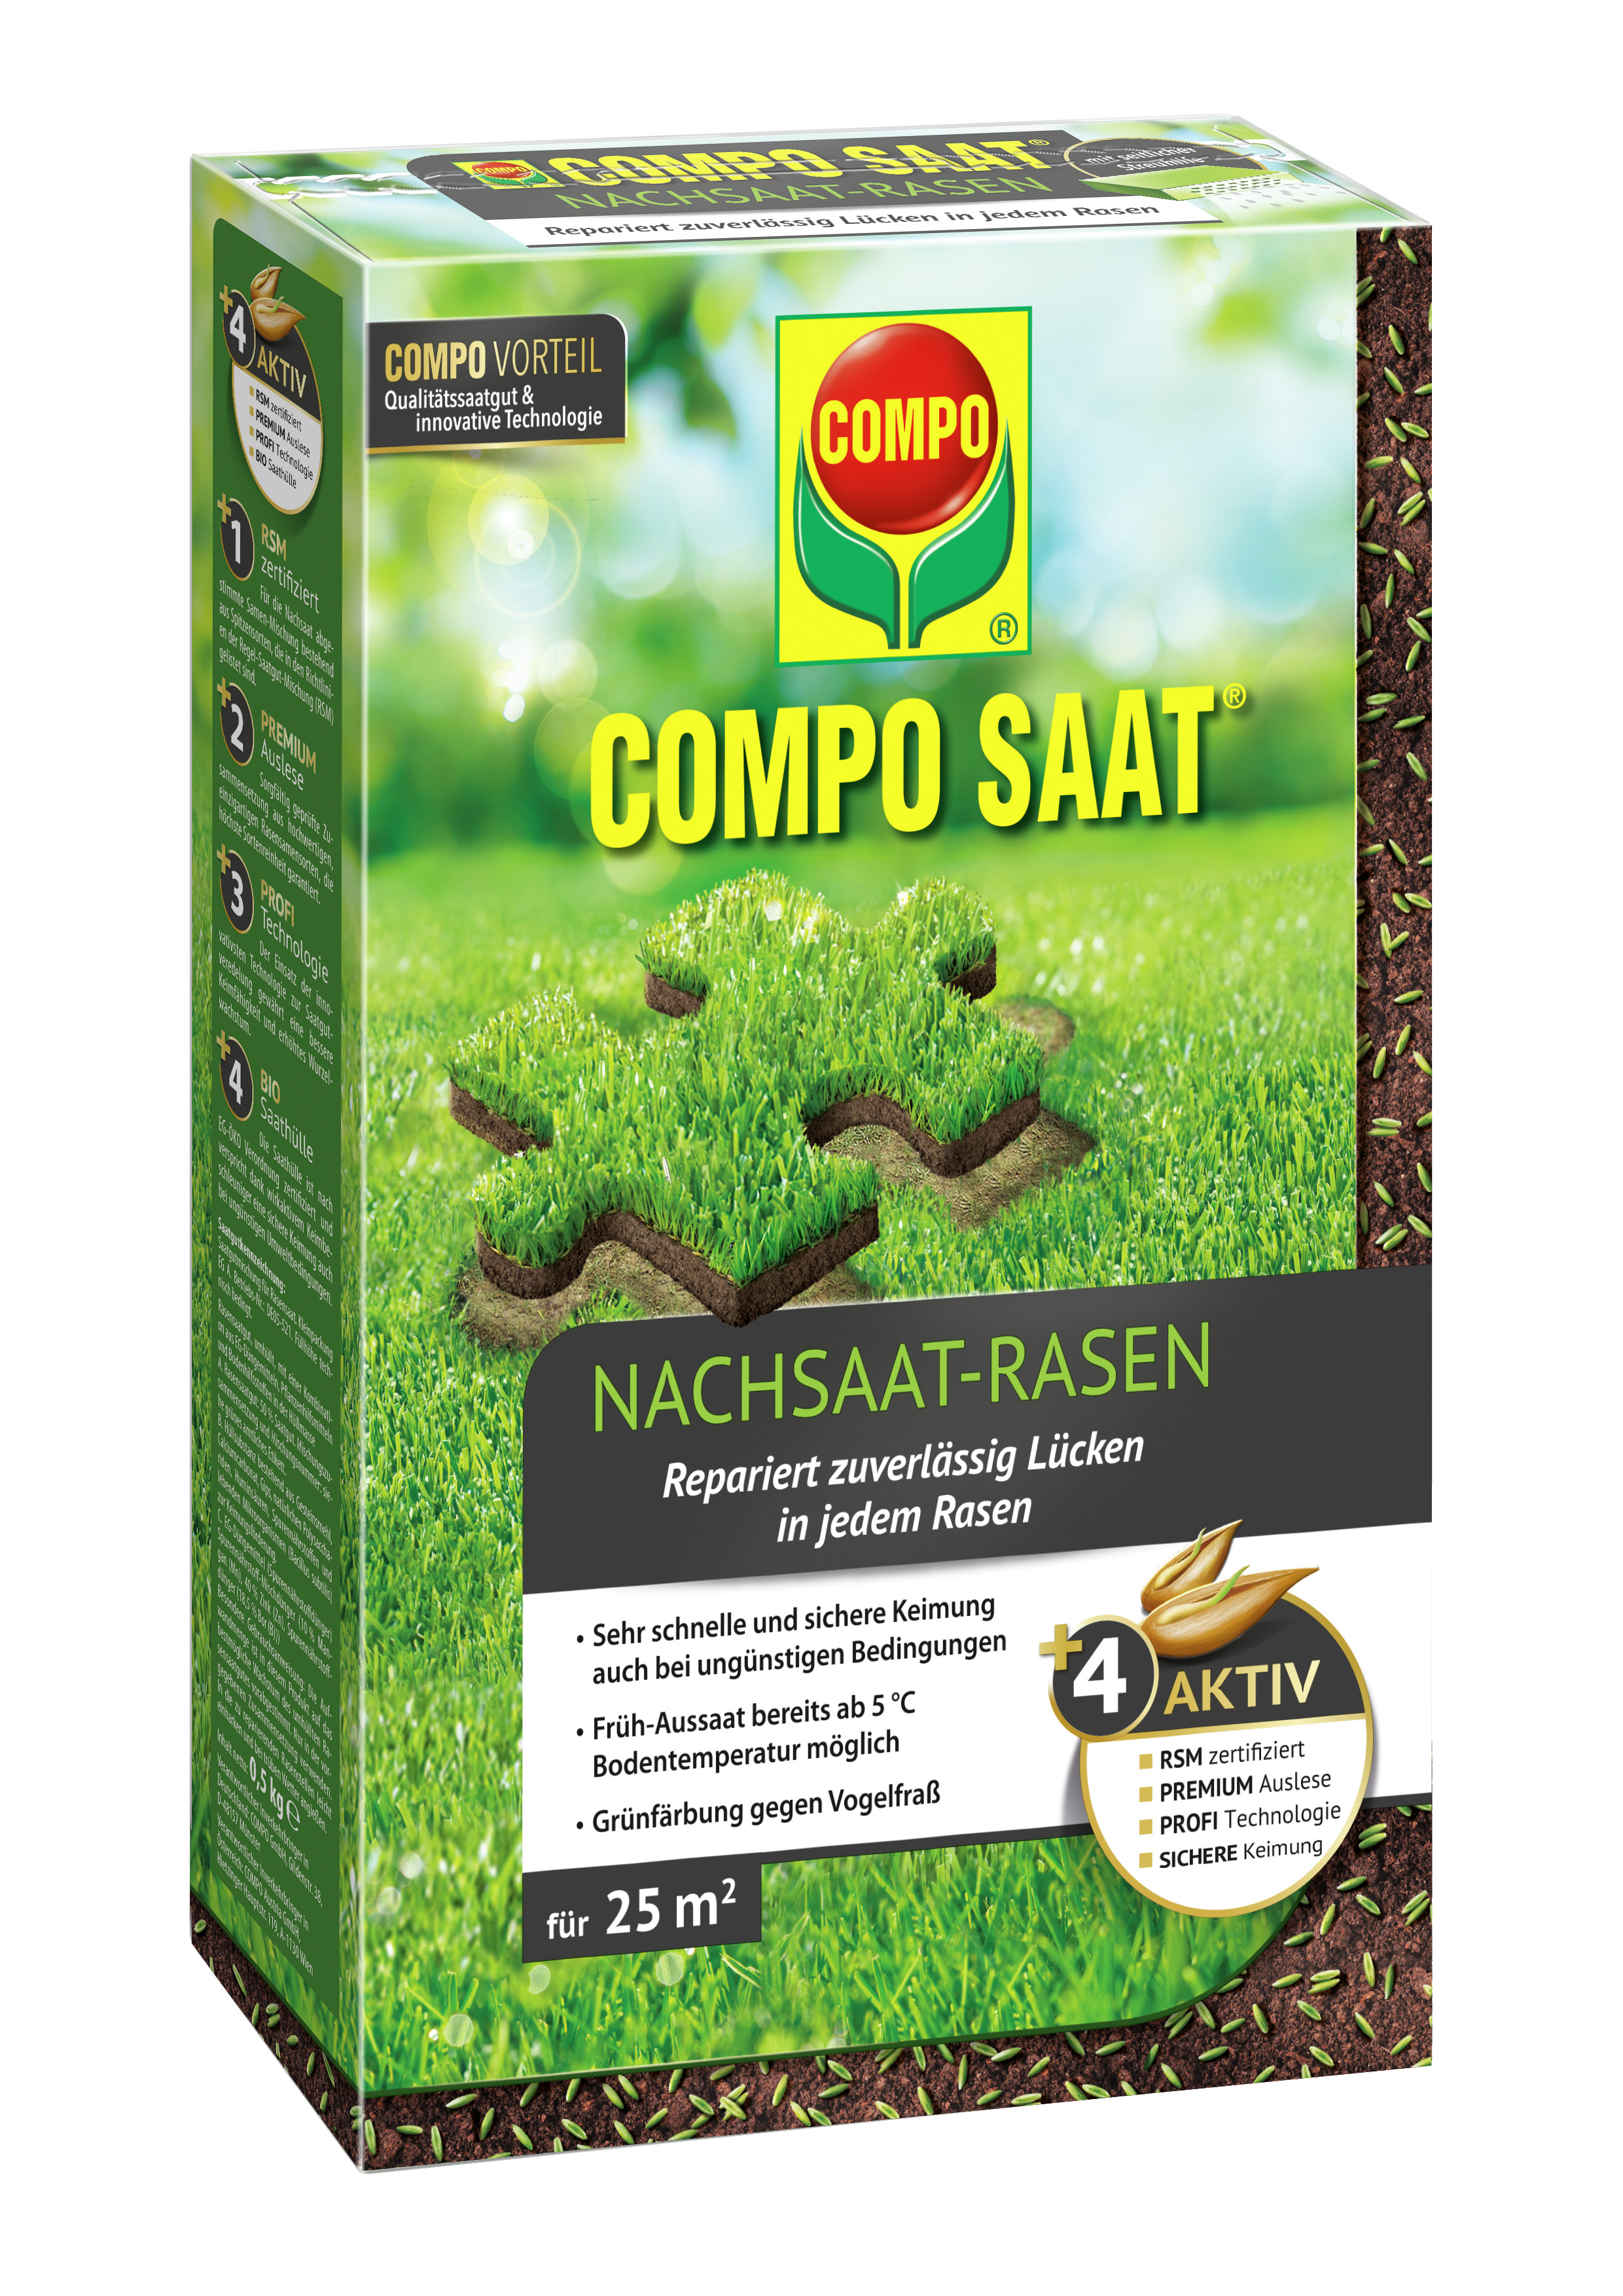 COMPO SAAT Nachsaat-Rasen, 500 g für 25 m²